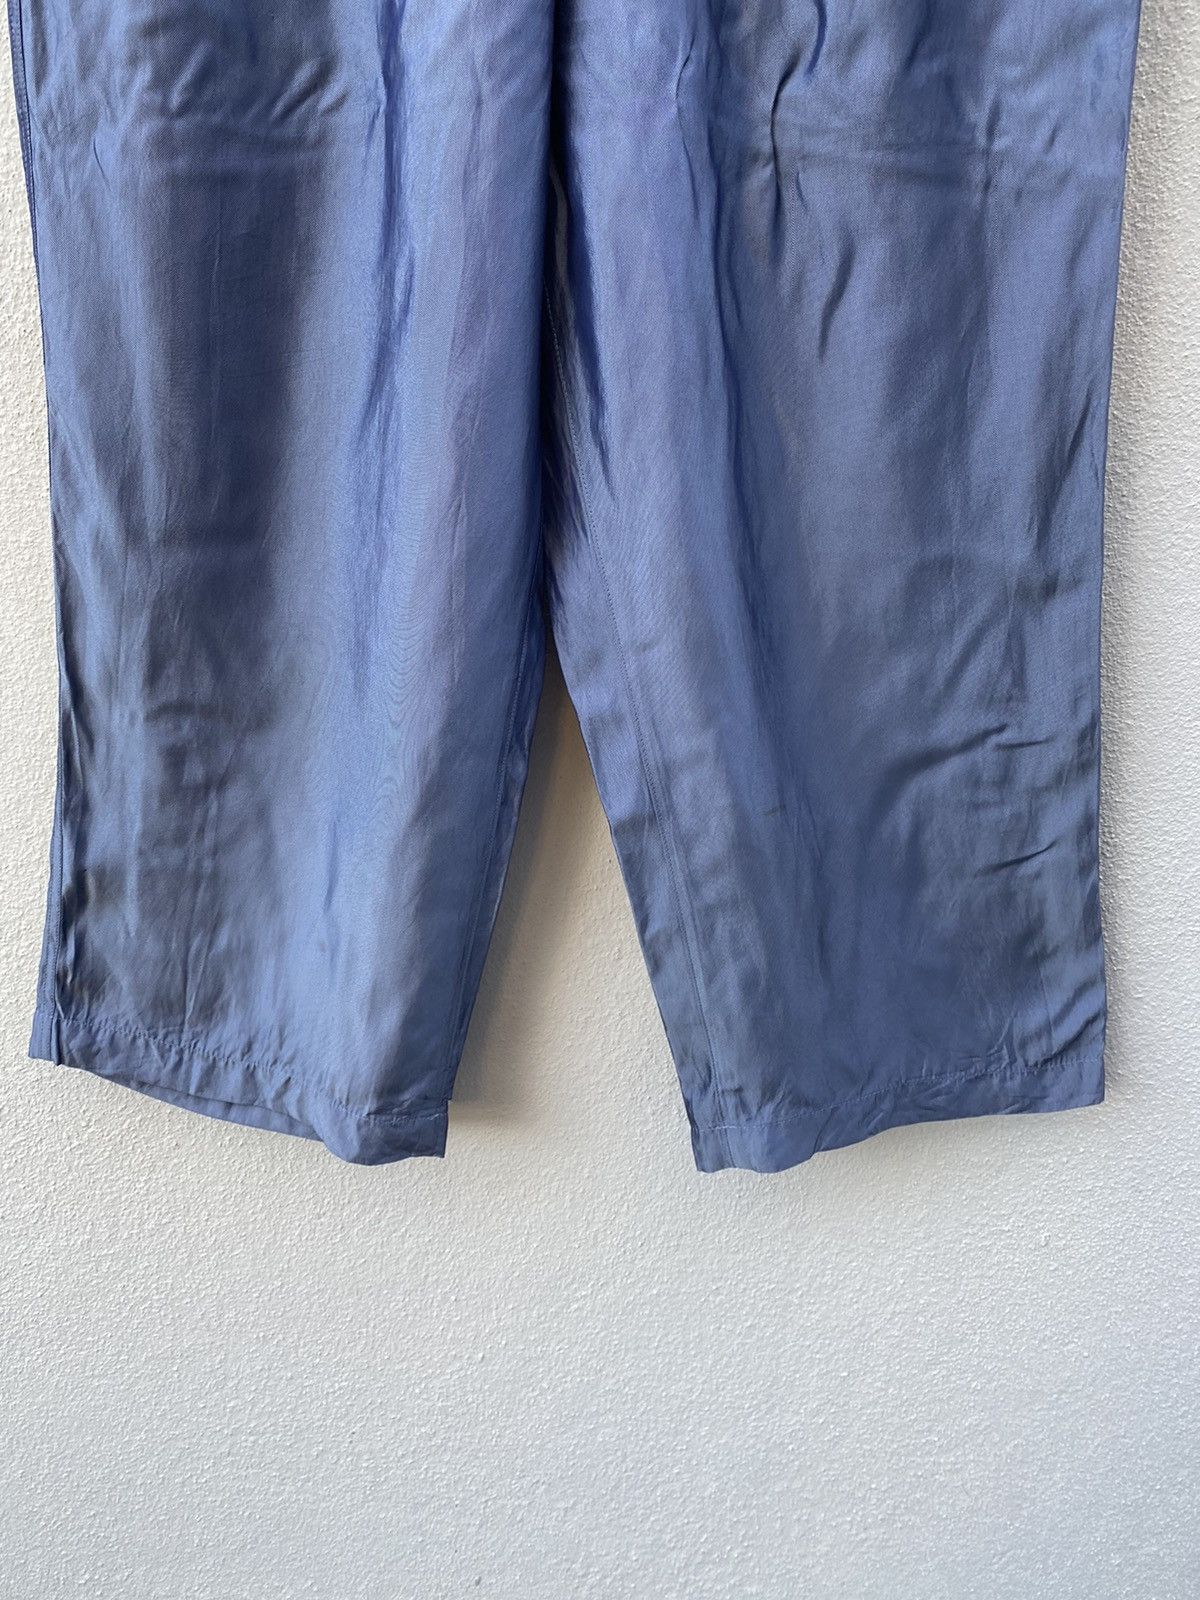 Y's Yohji Yamamoto Cropped Pants - 4